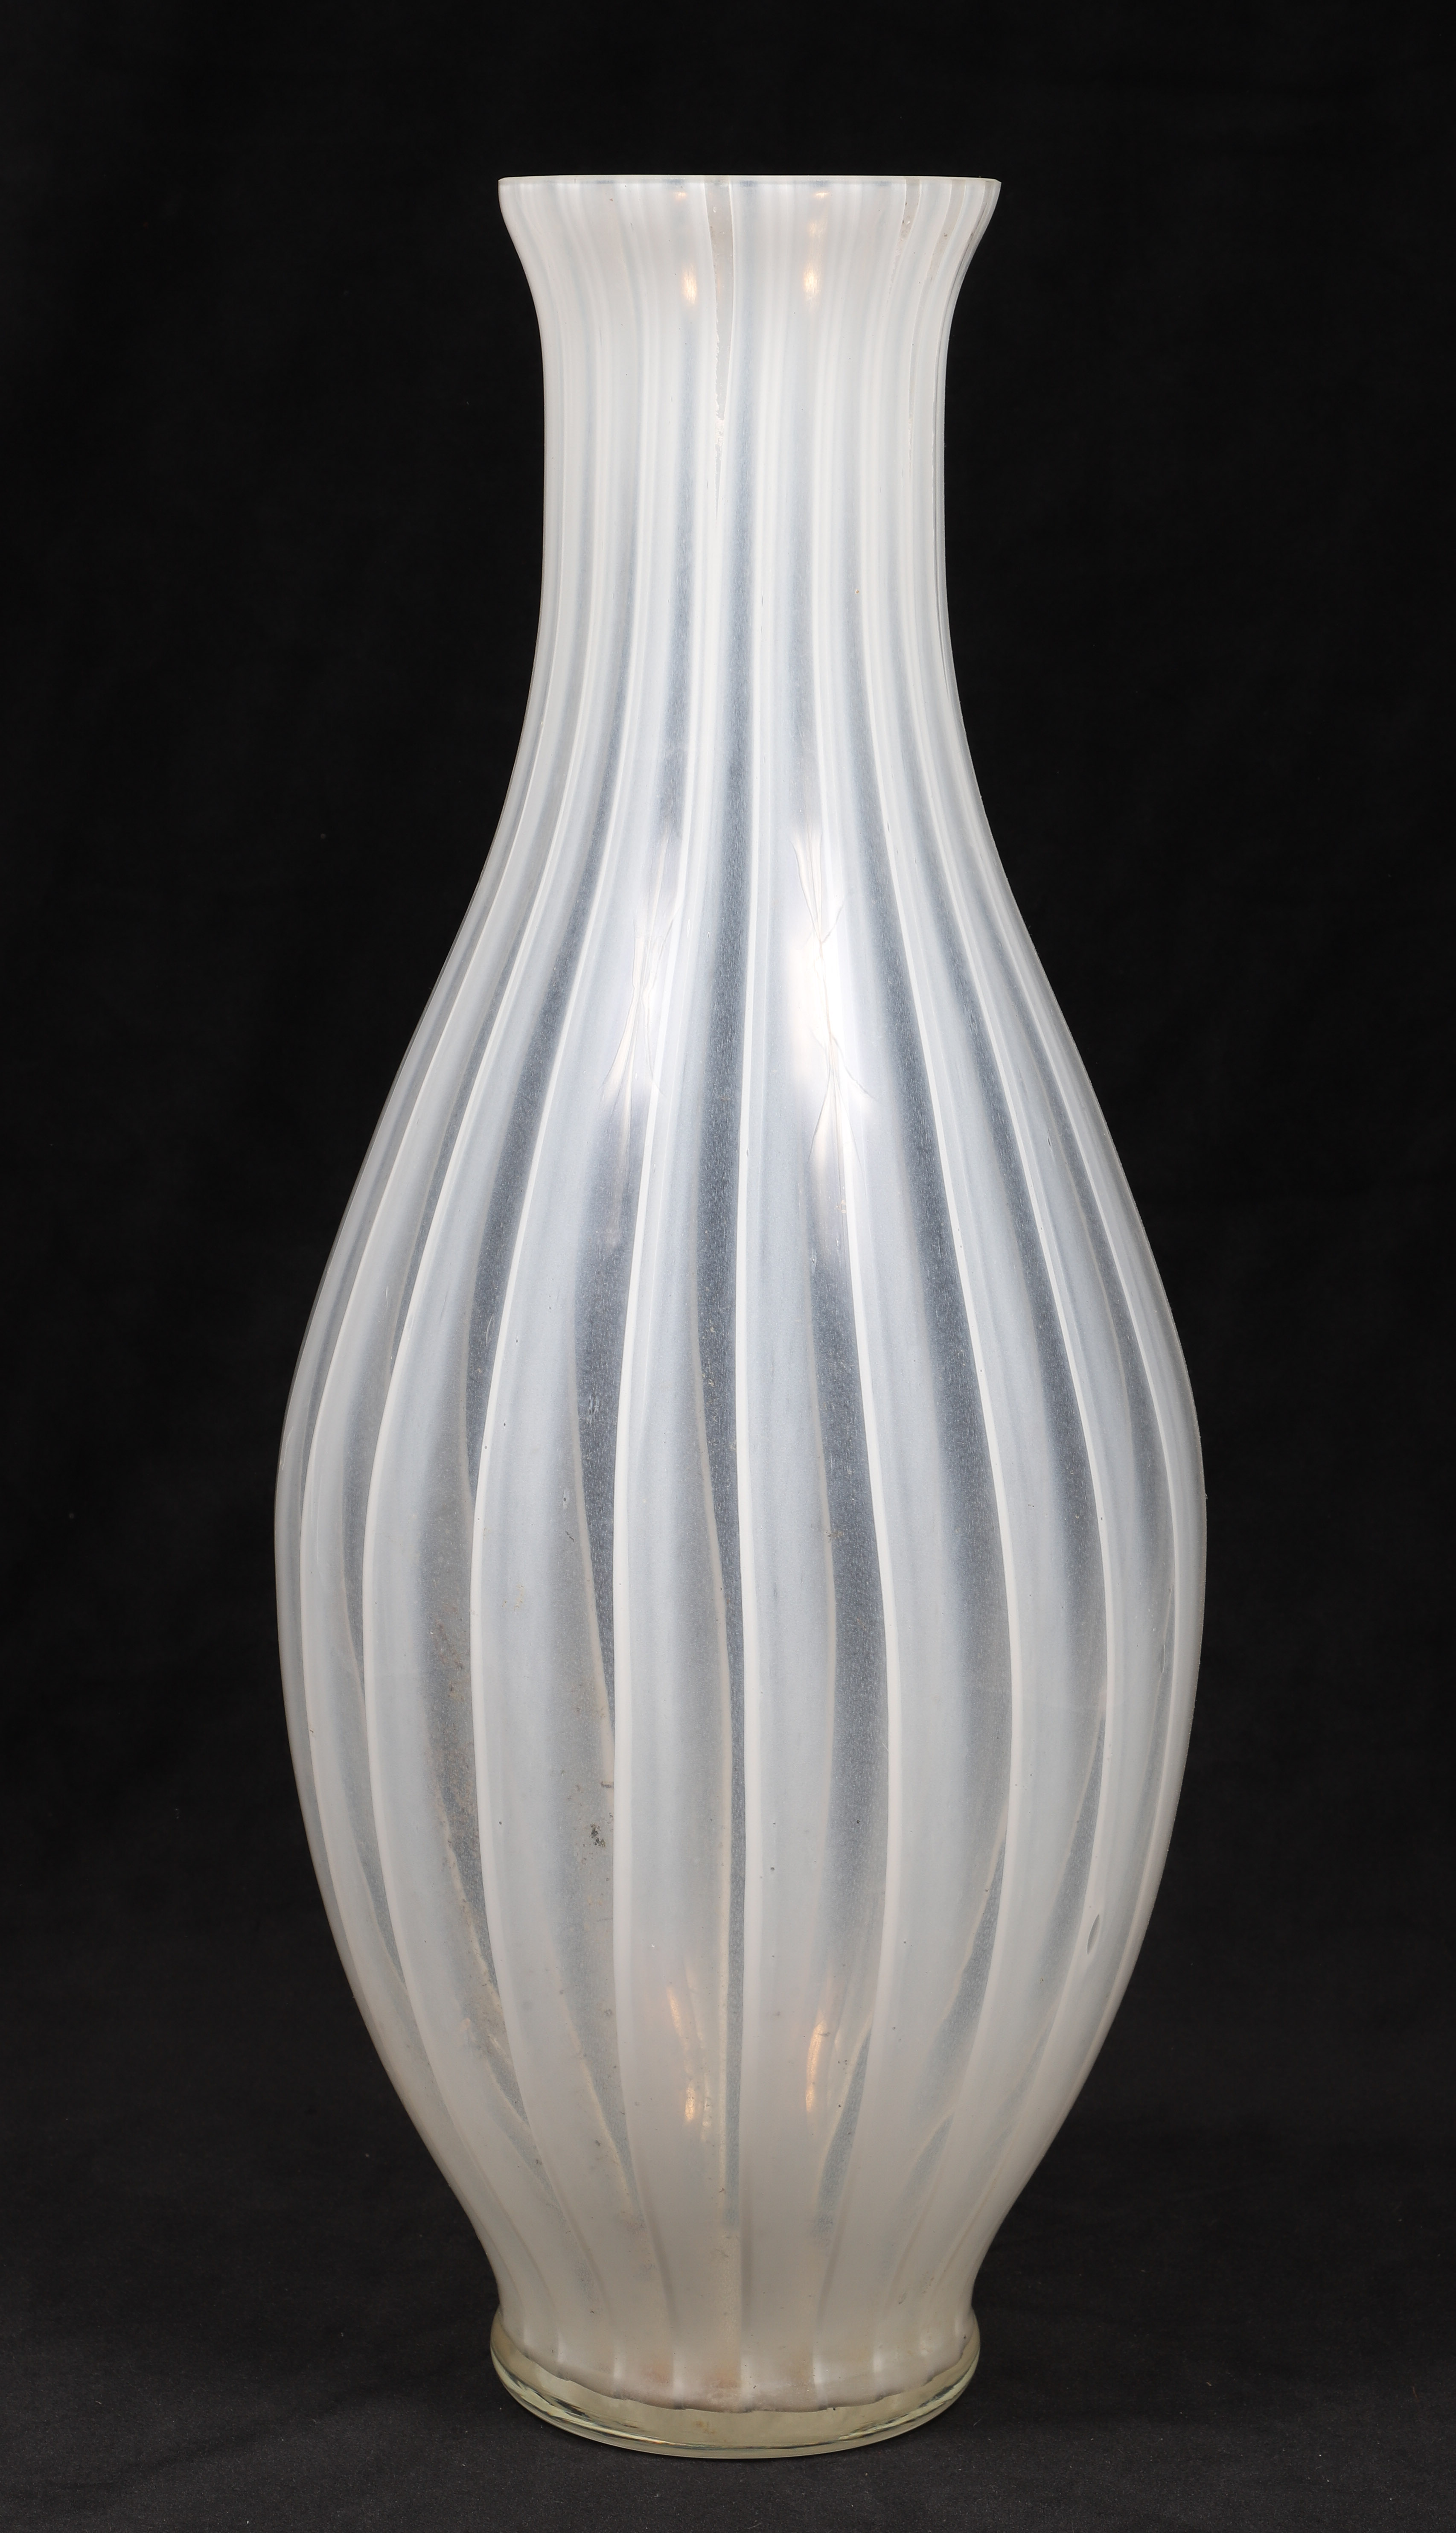 Large Murano glass vase label 2e1a83